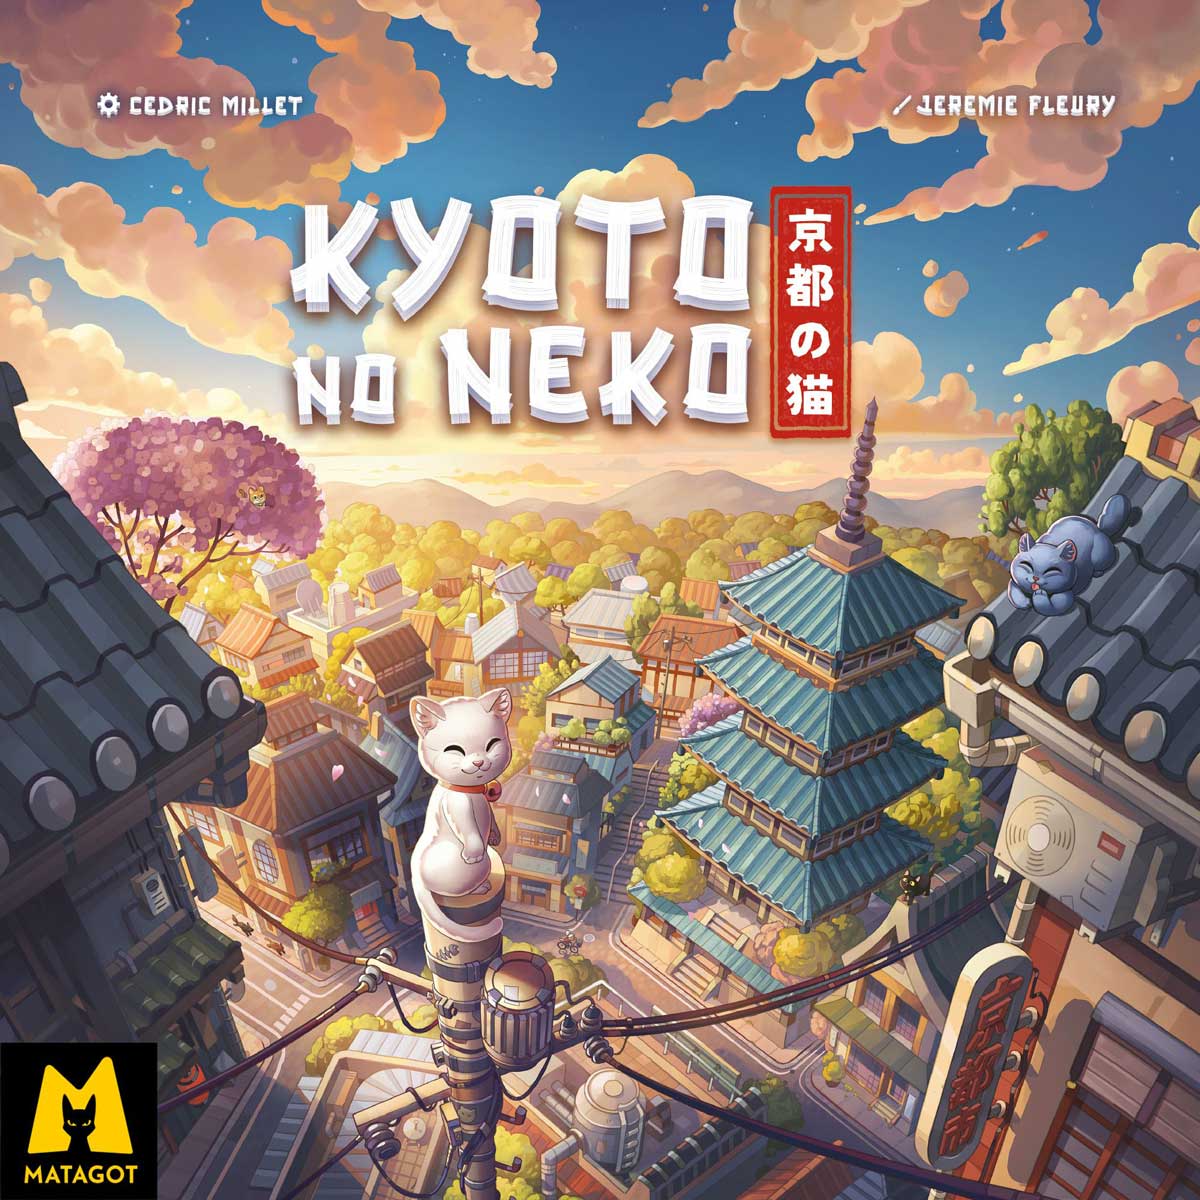 okładka gry planszowej Kyoto no Neko